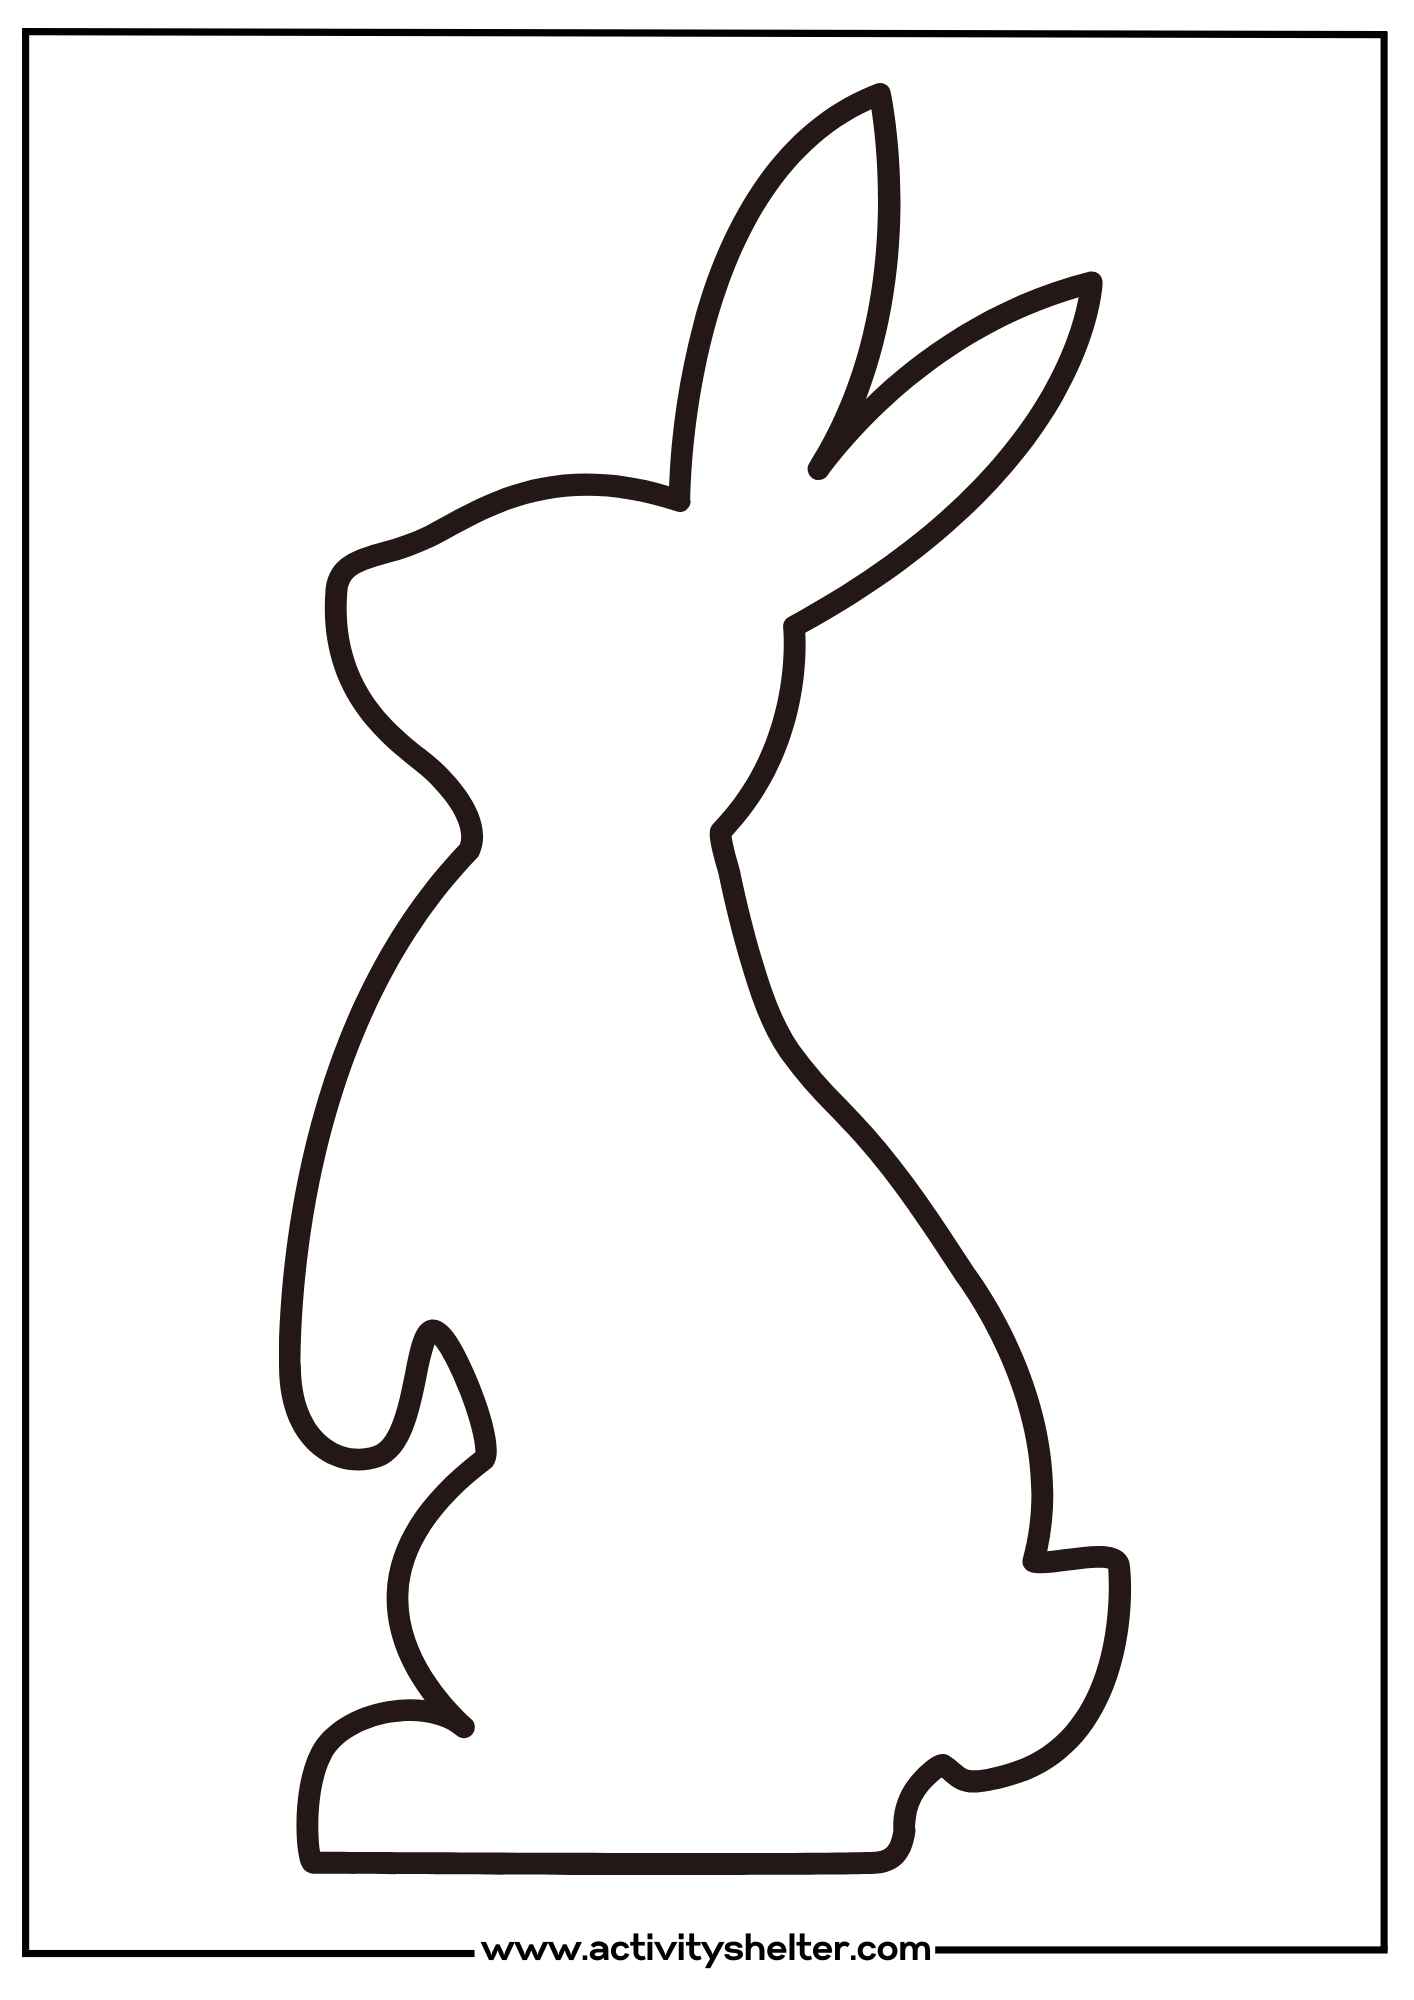 Printable Bunny Template